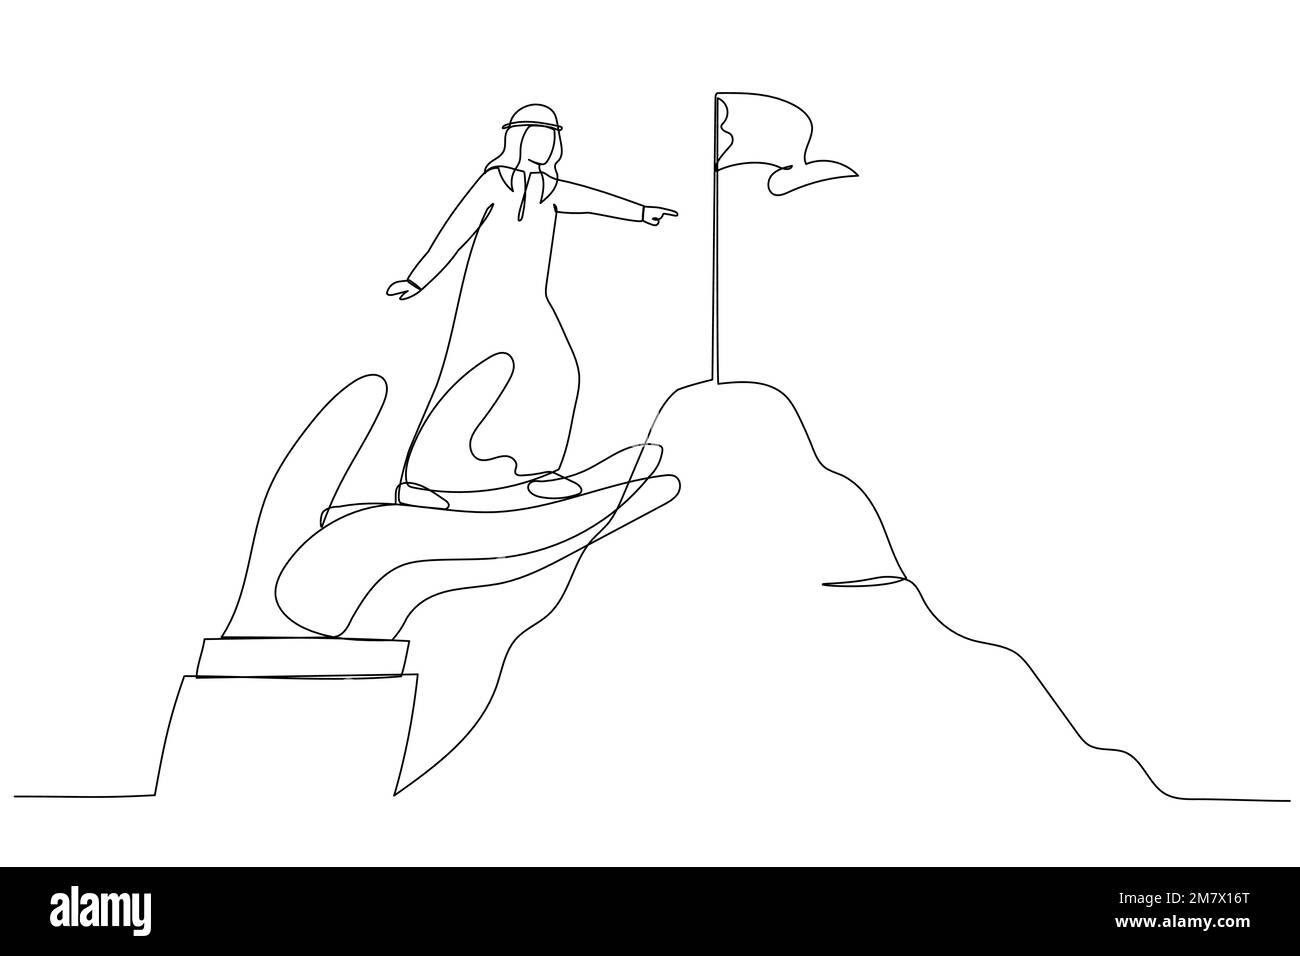 Darstellung eines arabischen Geschäftsmanns, der auf einer riesigen Hand steht, um die Zielflagge des Berggipfels zu erreichen. Ein kontinuierlicher Strichbildstil Stock Vektor